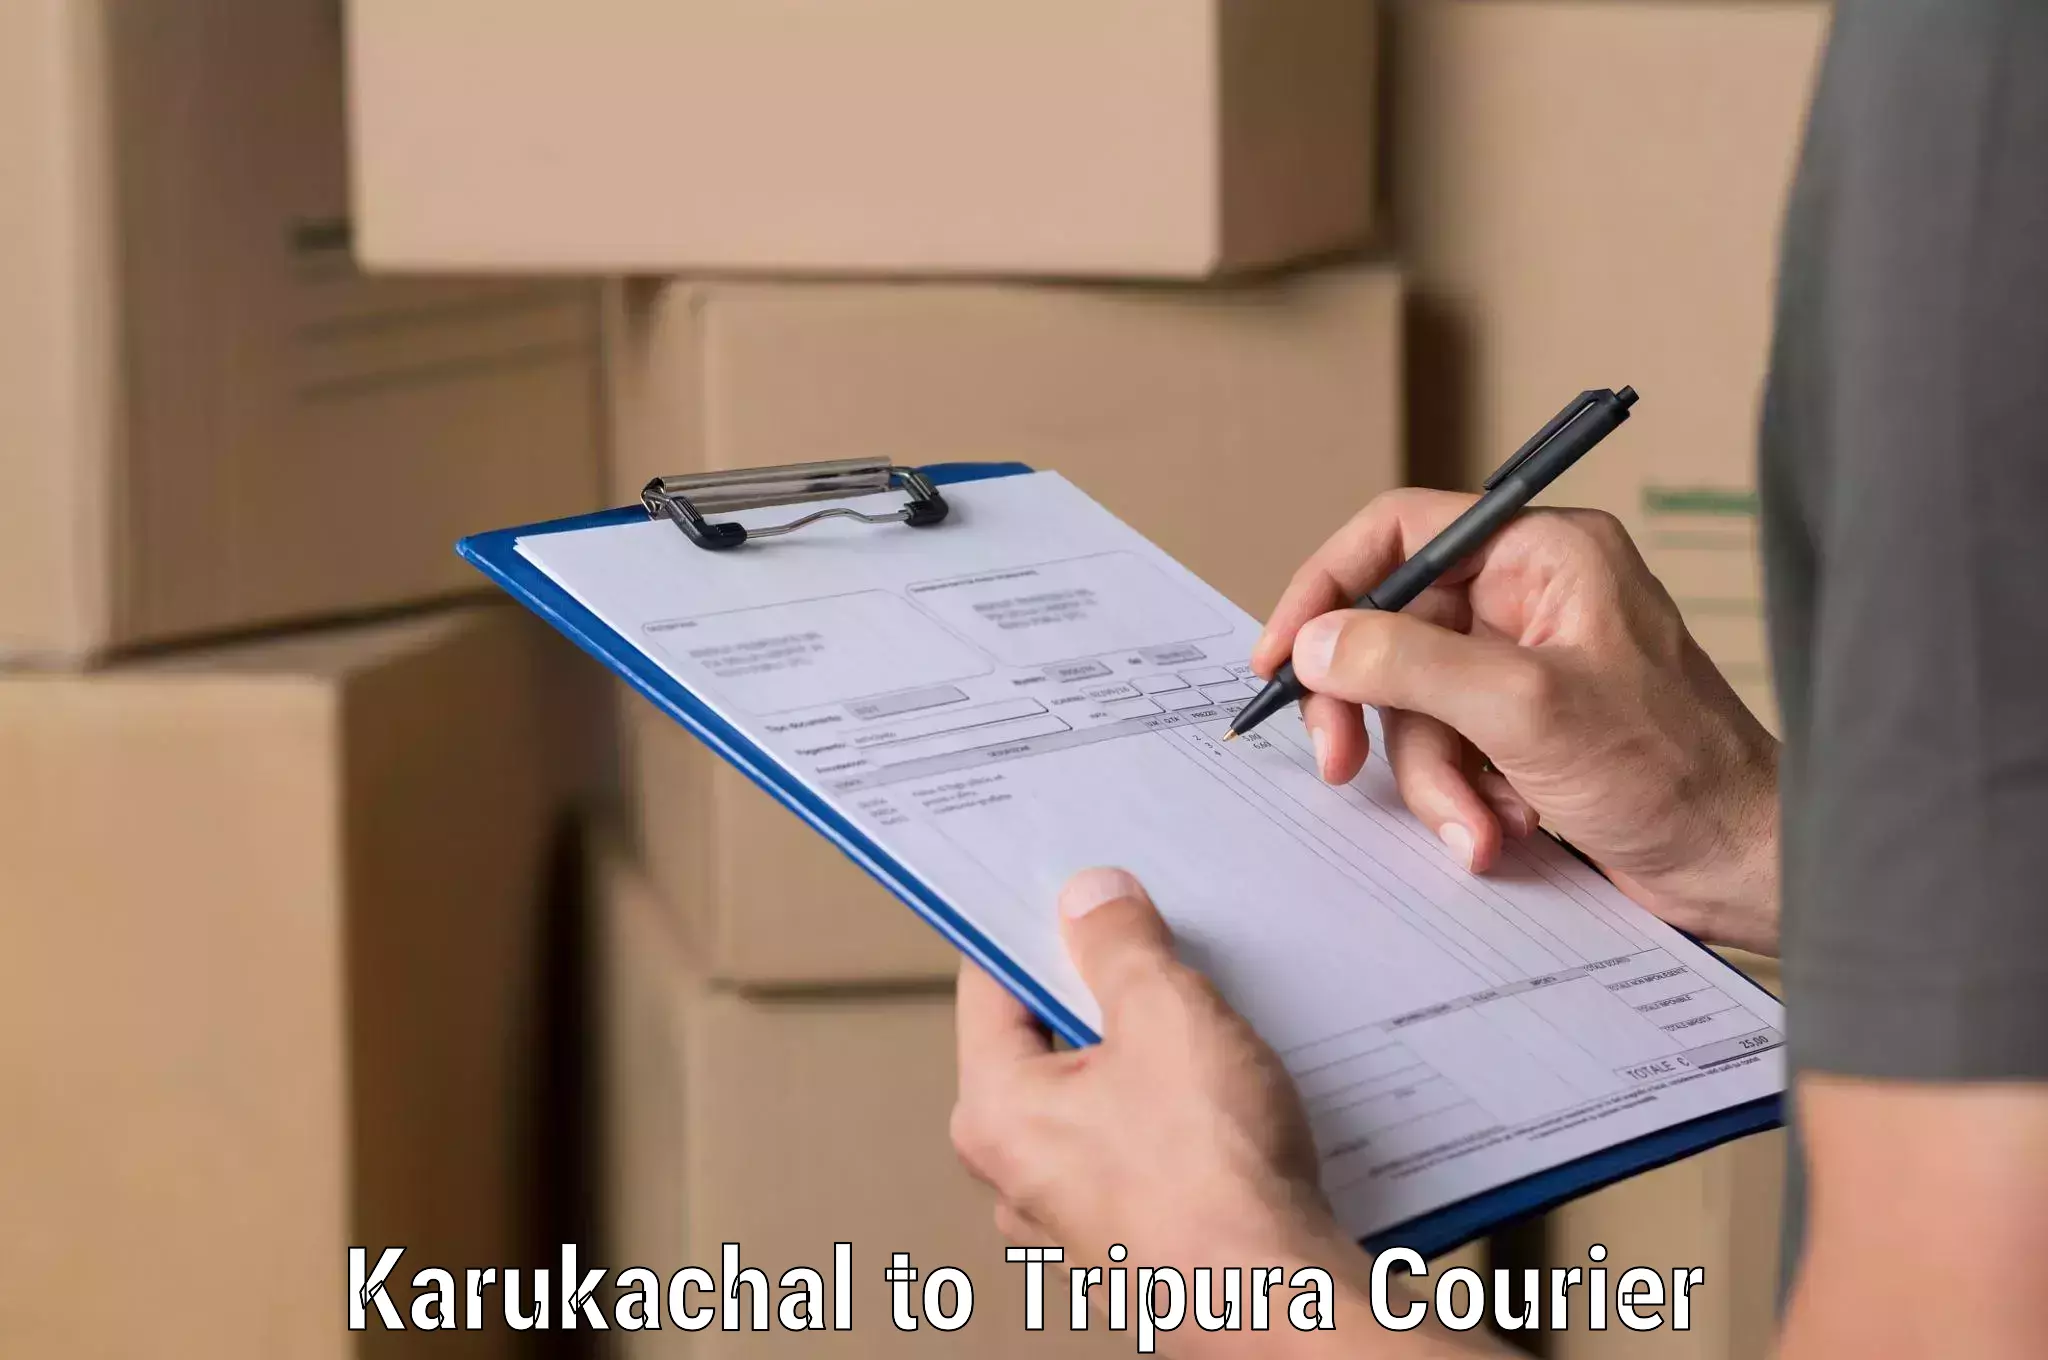 Urgent courier needs Karukachal to Udaipur Tripura